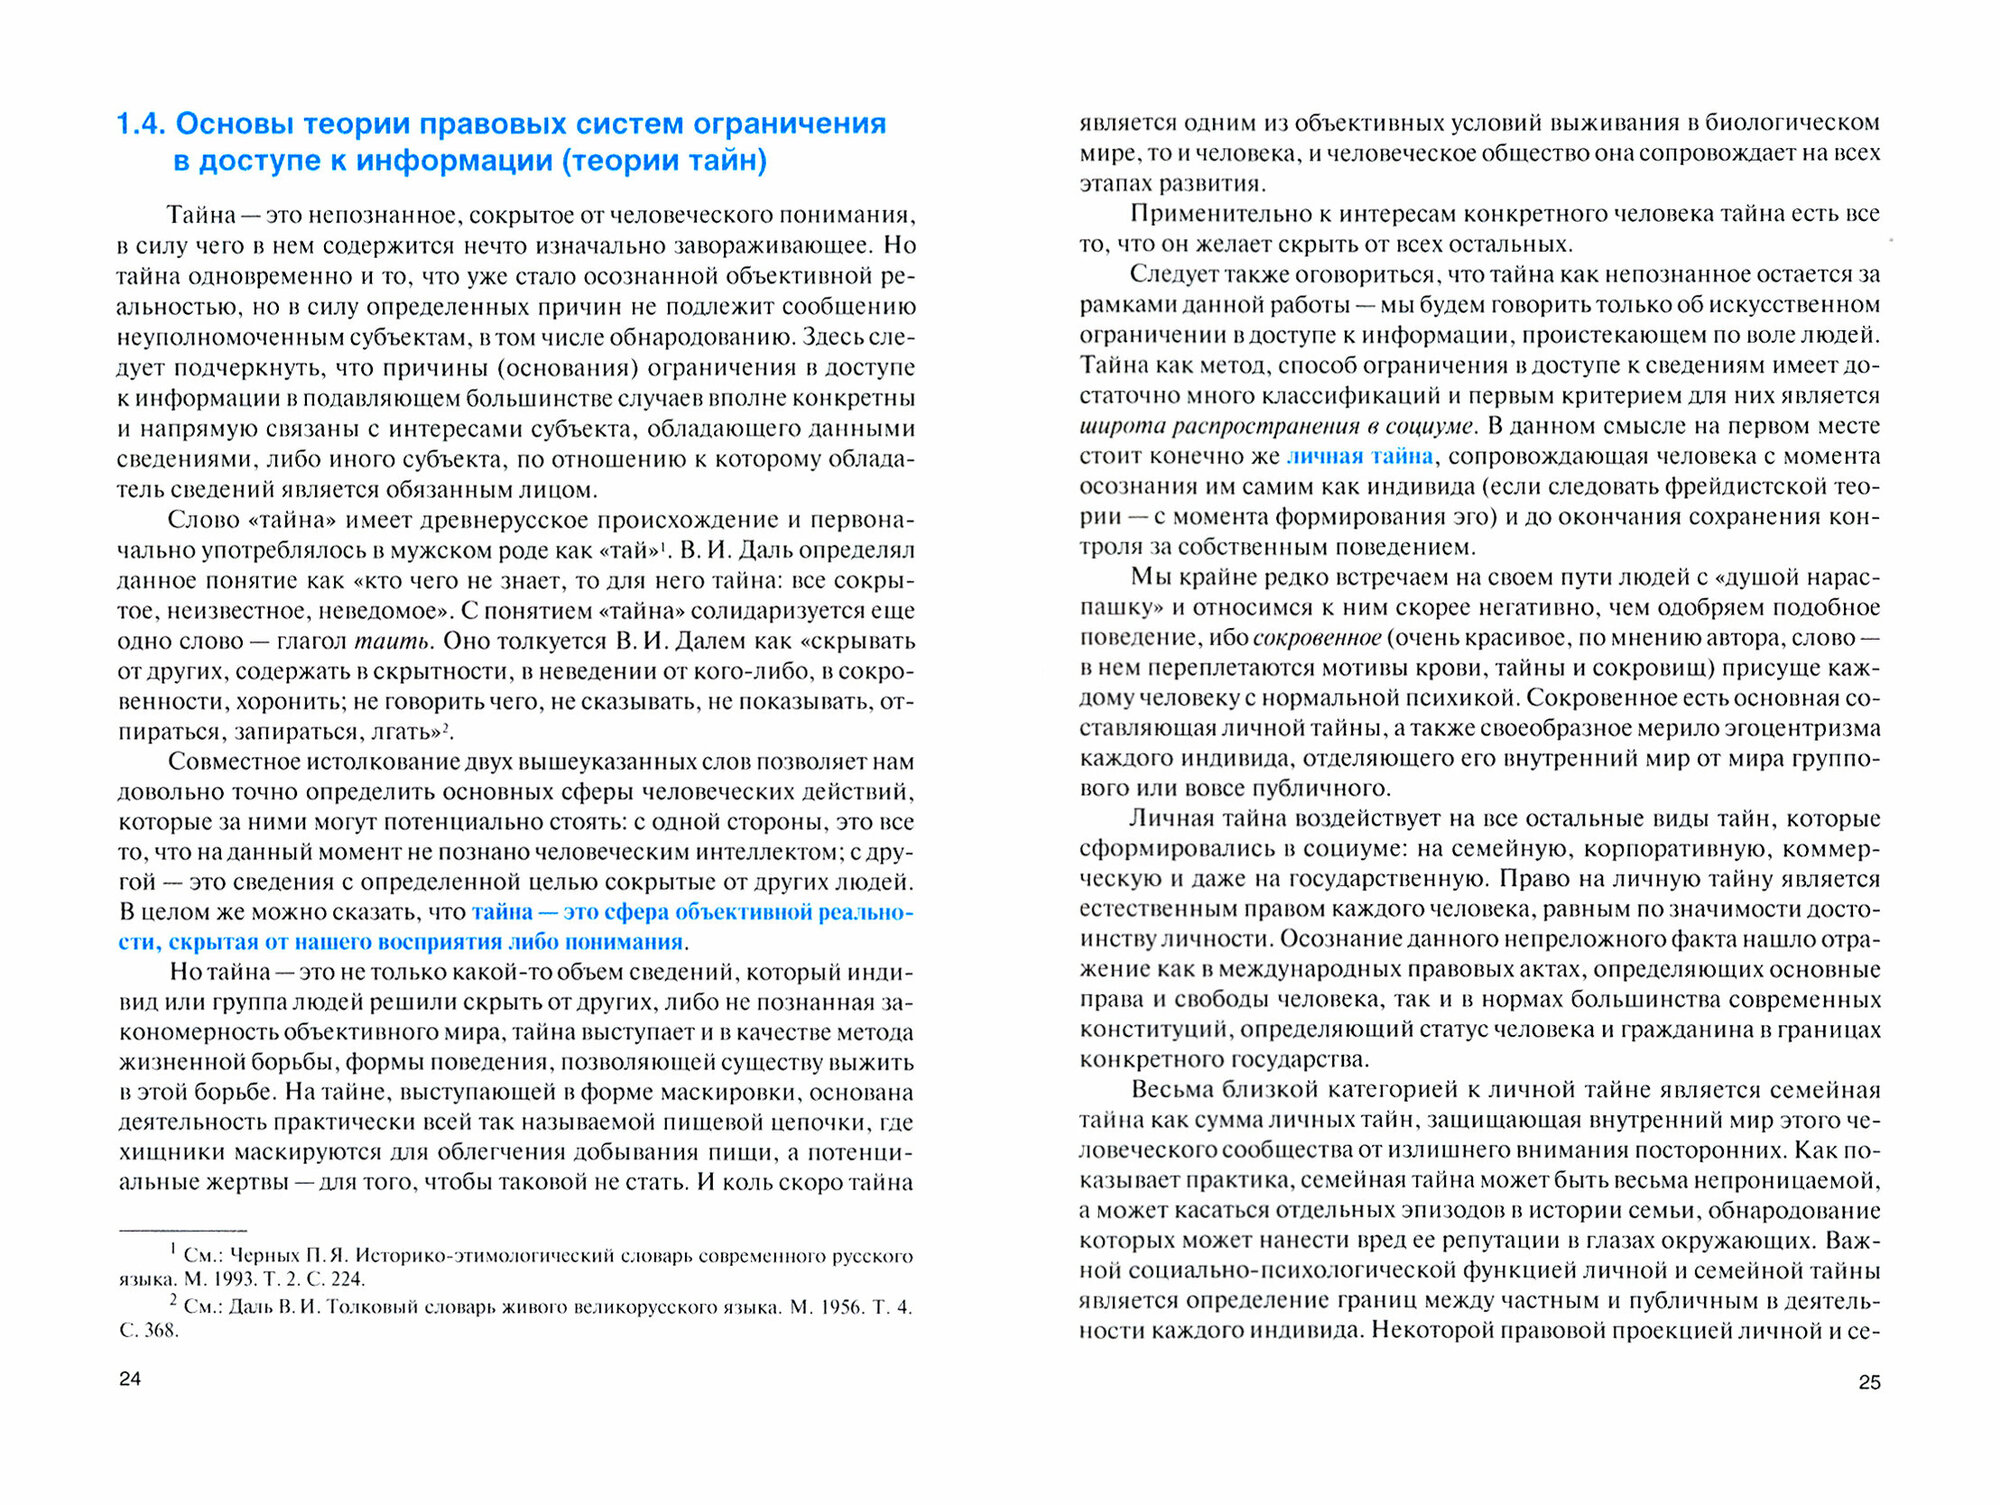 Основные правовые системы ограничения в доступе к информации в Российской Федерации. Учебник - фото №2